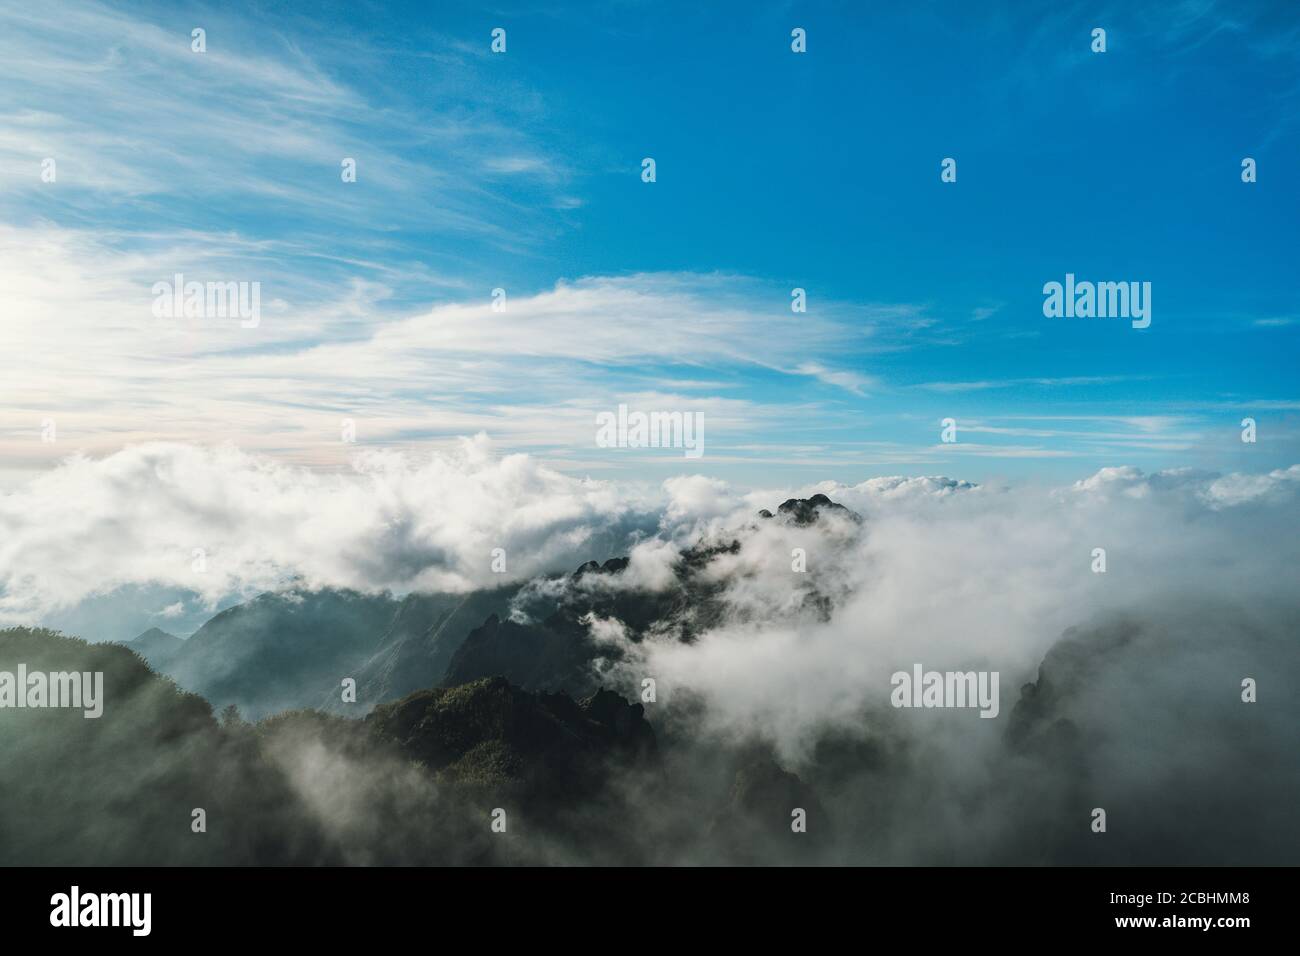 Hermosa vista de la cima de la montaña en la niebla. Escena dramática. Fantástico paisaje de montañas verdes. Foto de stock